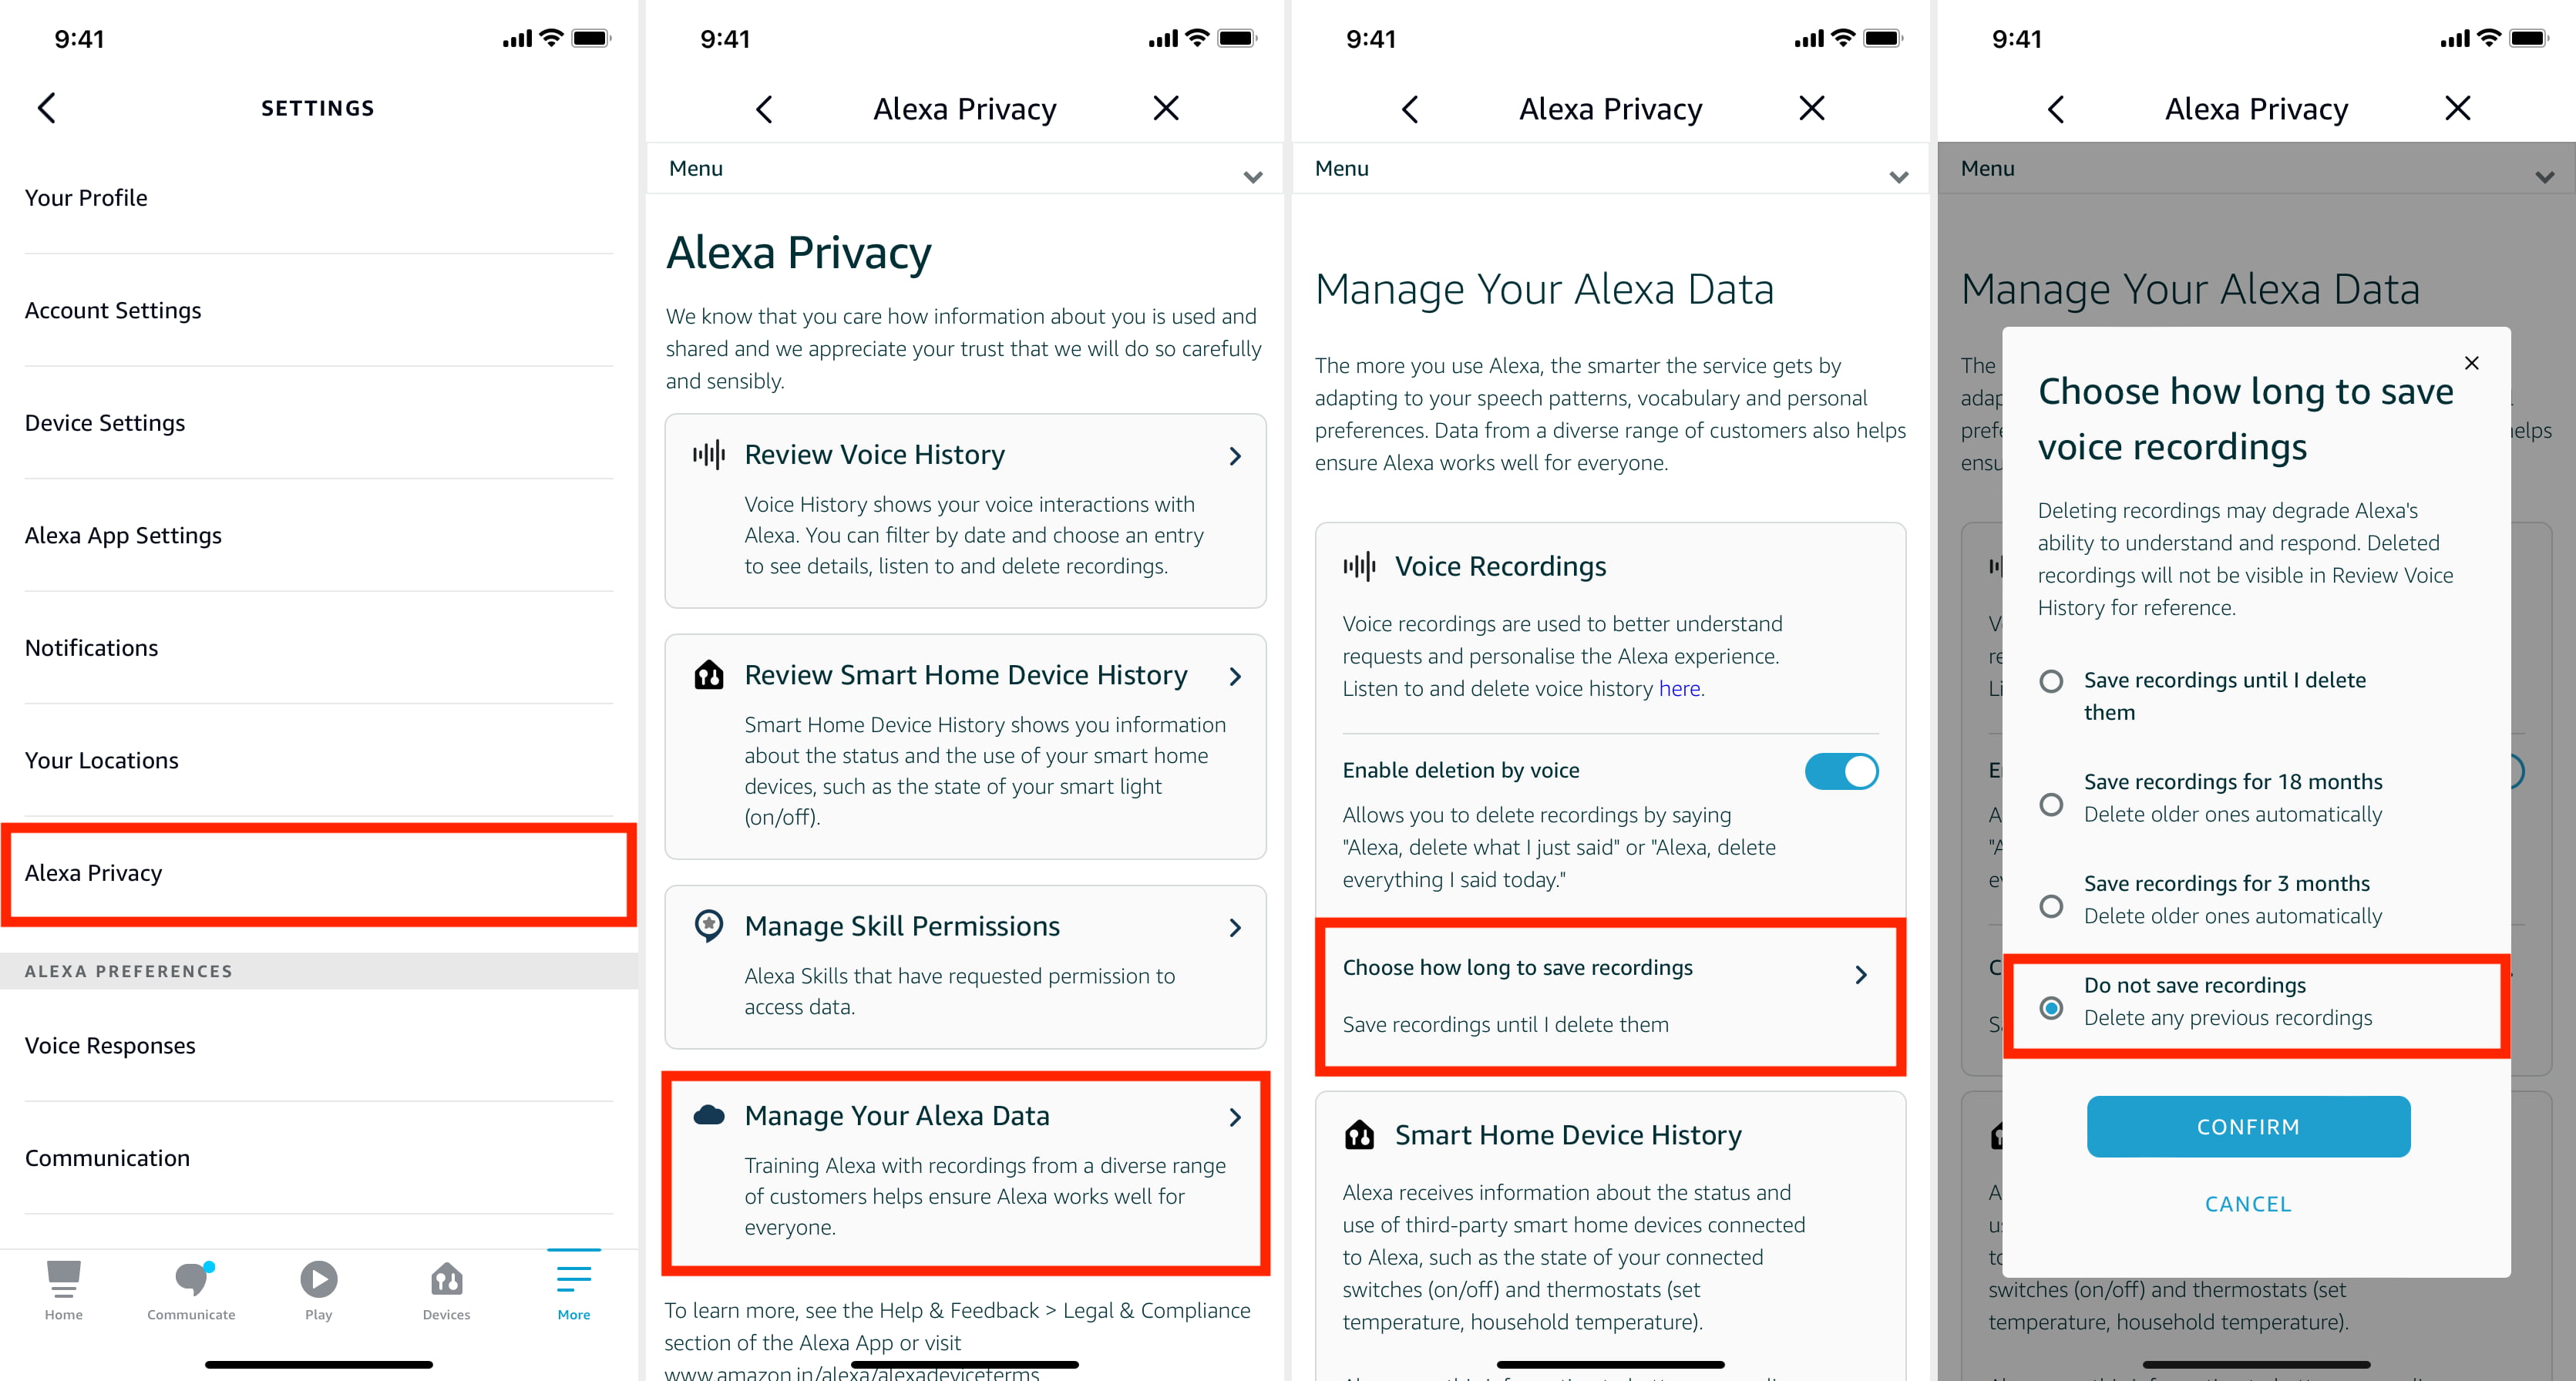 Passaggi per eliminare tutte le registrazioni vocali di Alexa salvate dall'app per smartphone